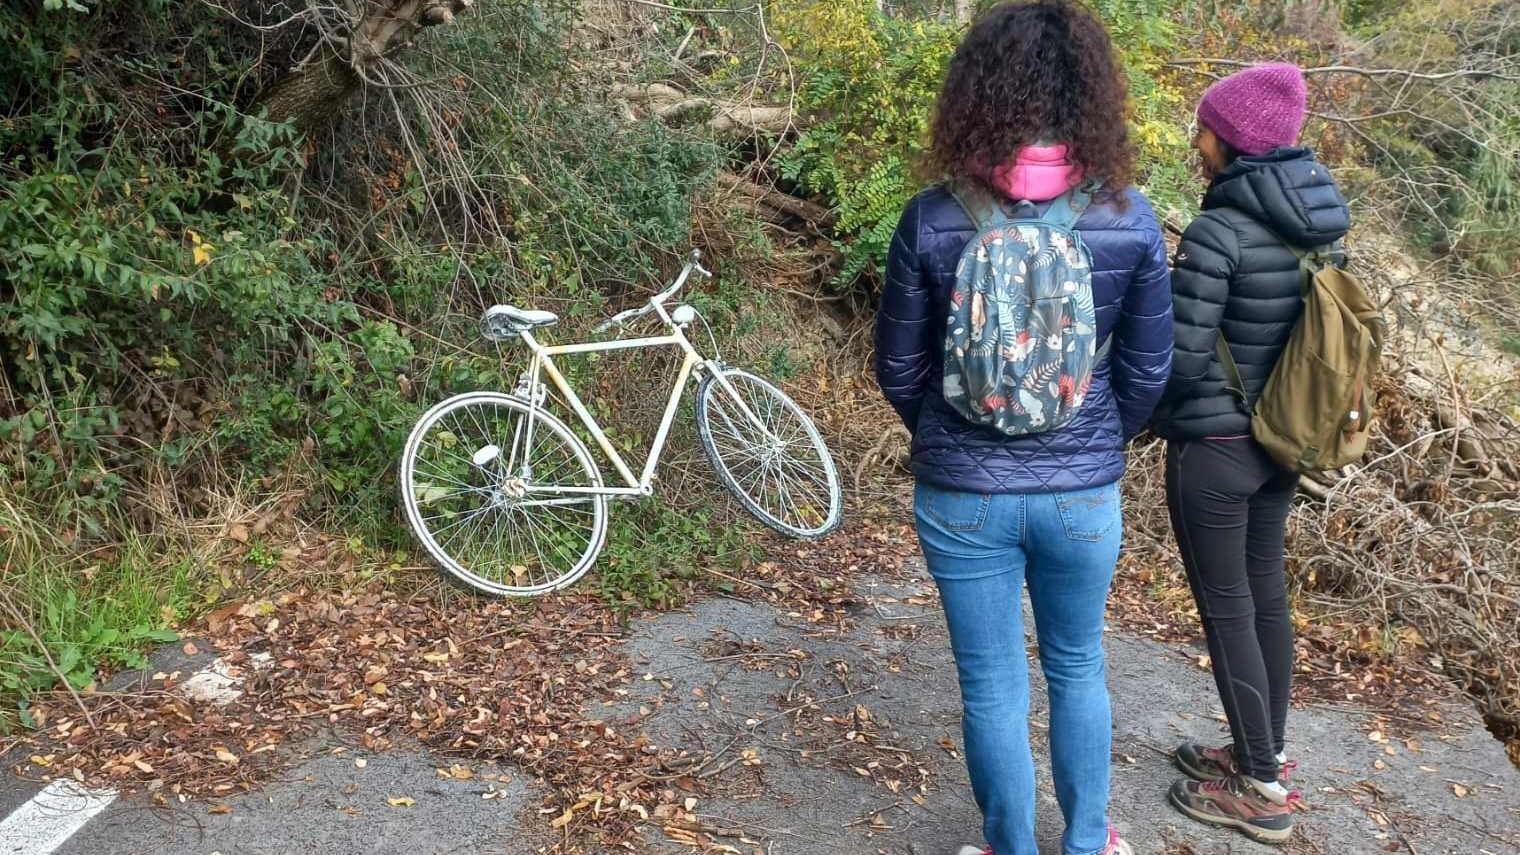 E' stata ritrovata la bicicletta bianca in ricordo di Matteo Prodi